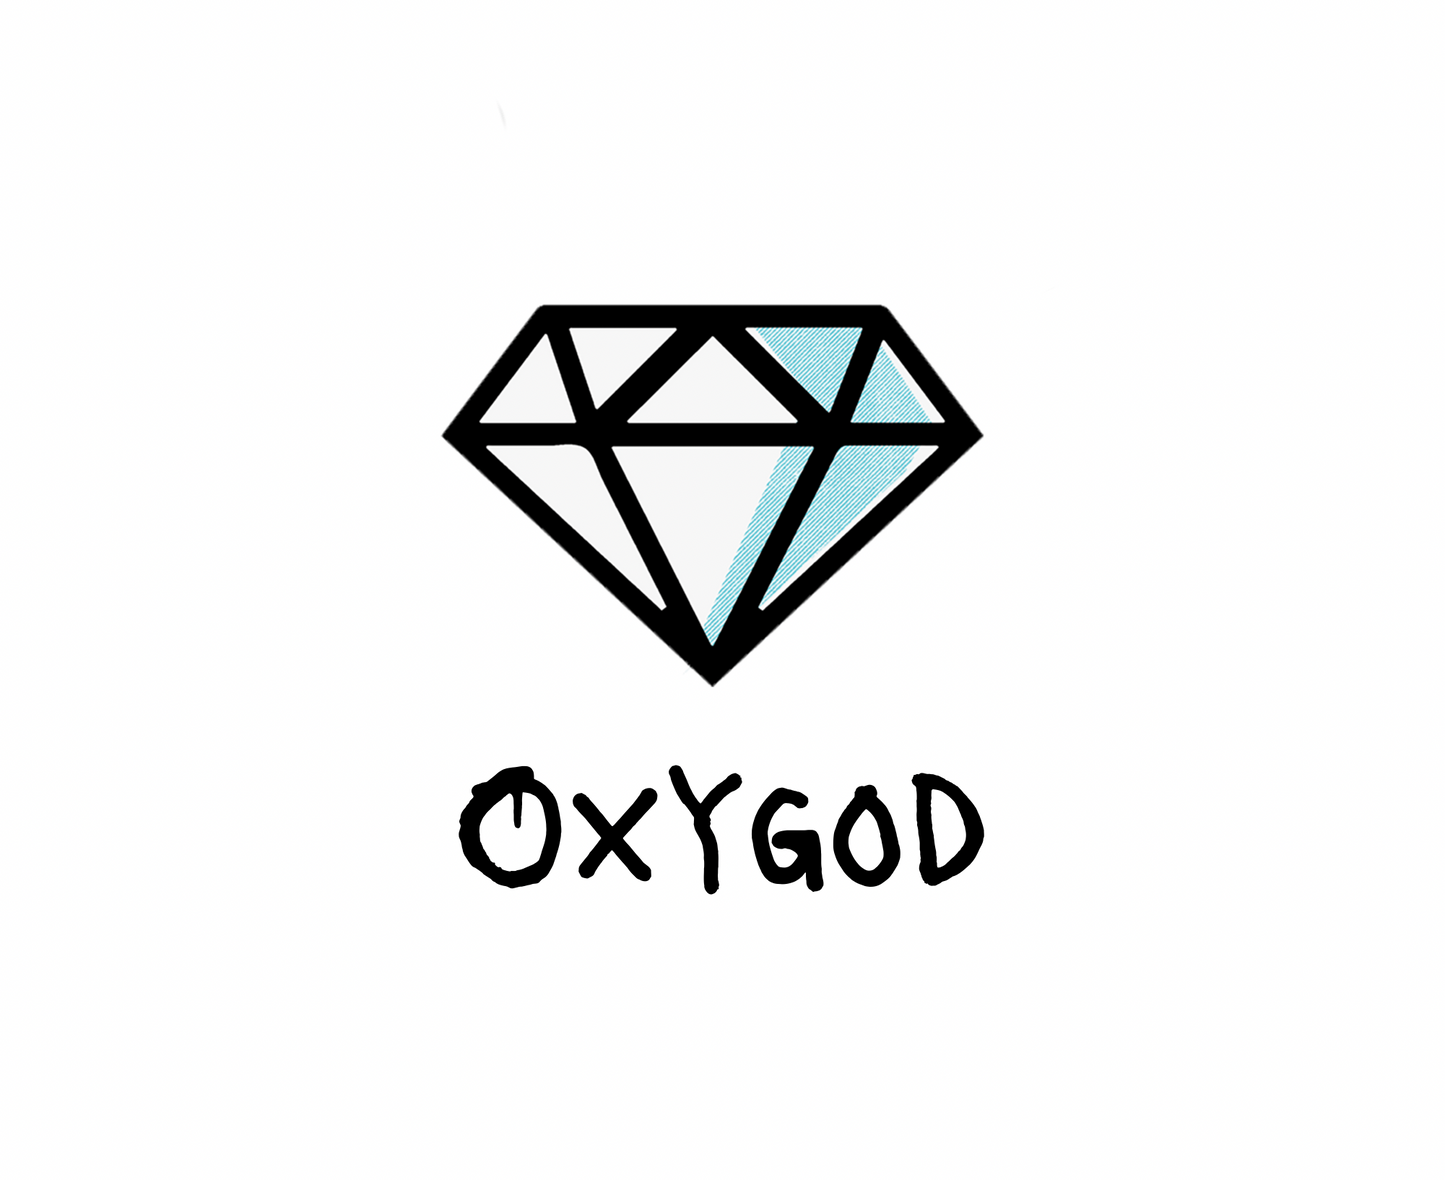 OXYGOD - GIFT CARDS